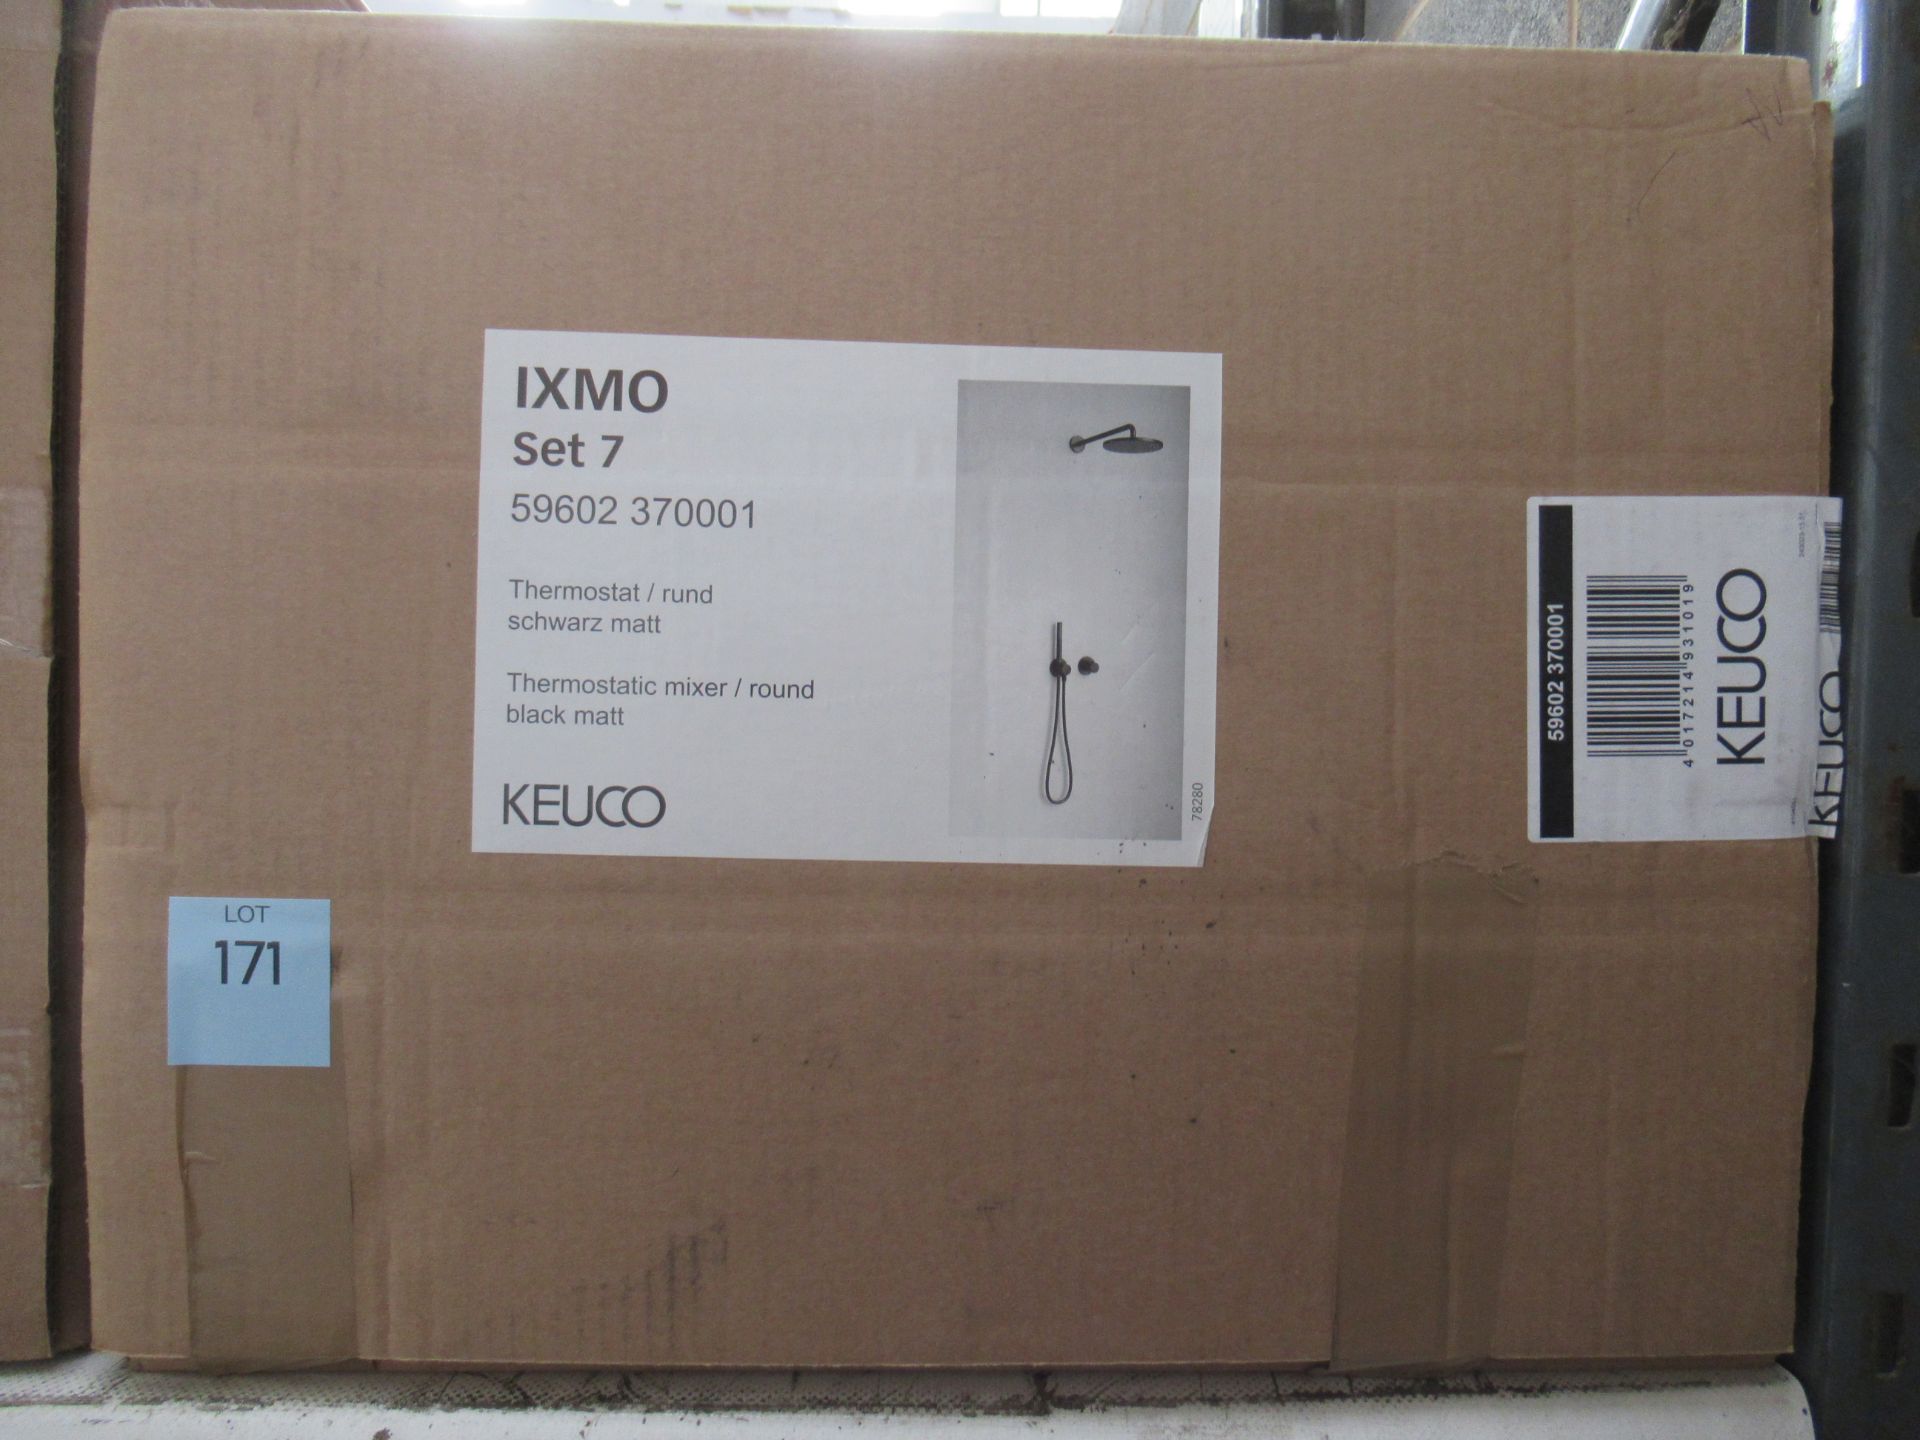 A Keuco IXMO Set 7 Thermostatic Mixer/Round Black Matt Shower Kit, P/N 59602-370001